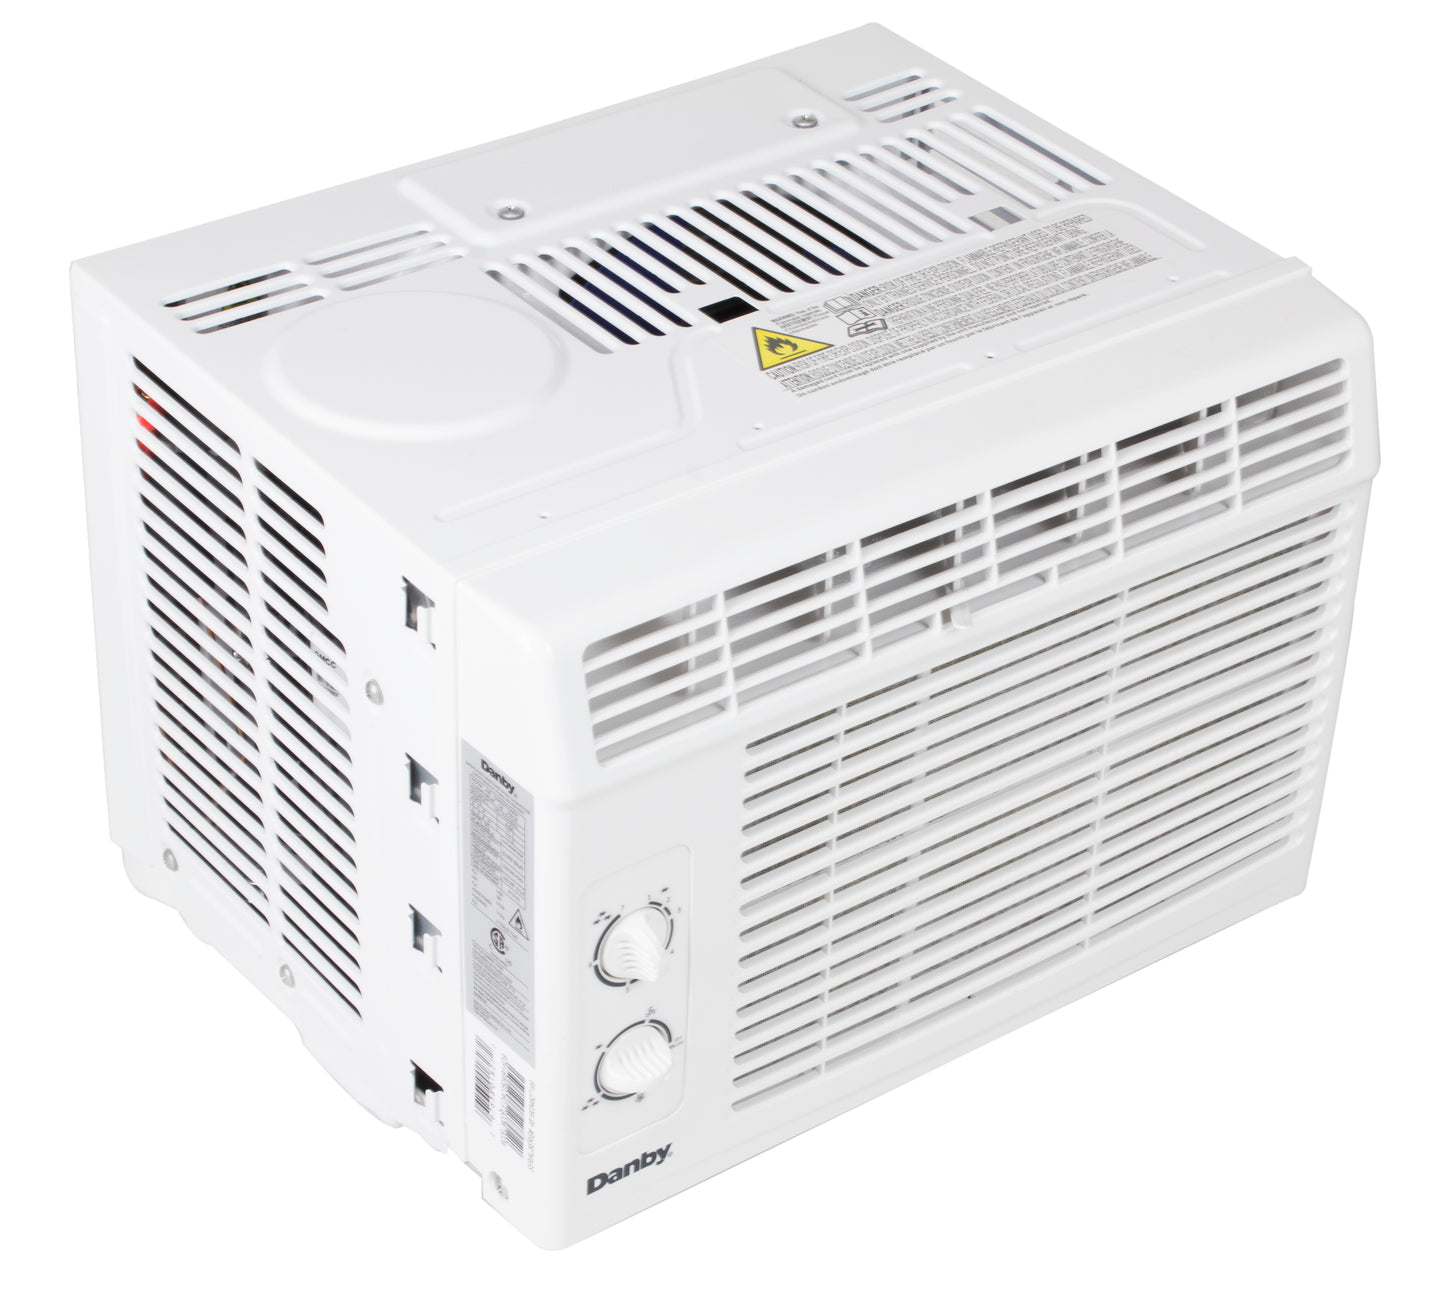 Danby 5,000 BTU Window Air Conditioner - White - Refurbished*